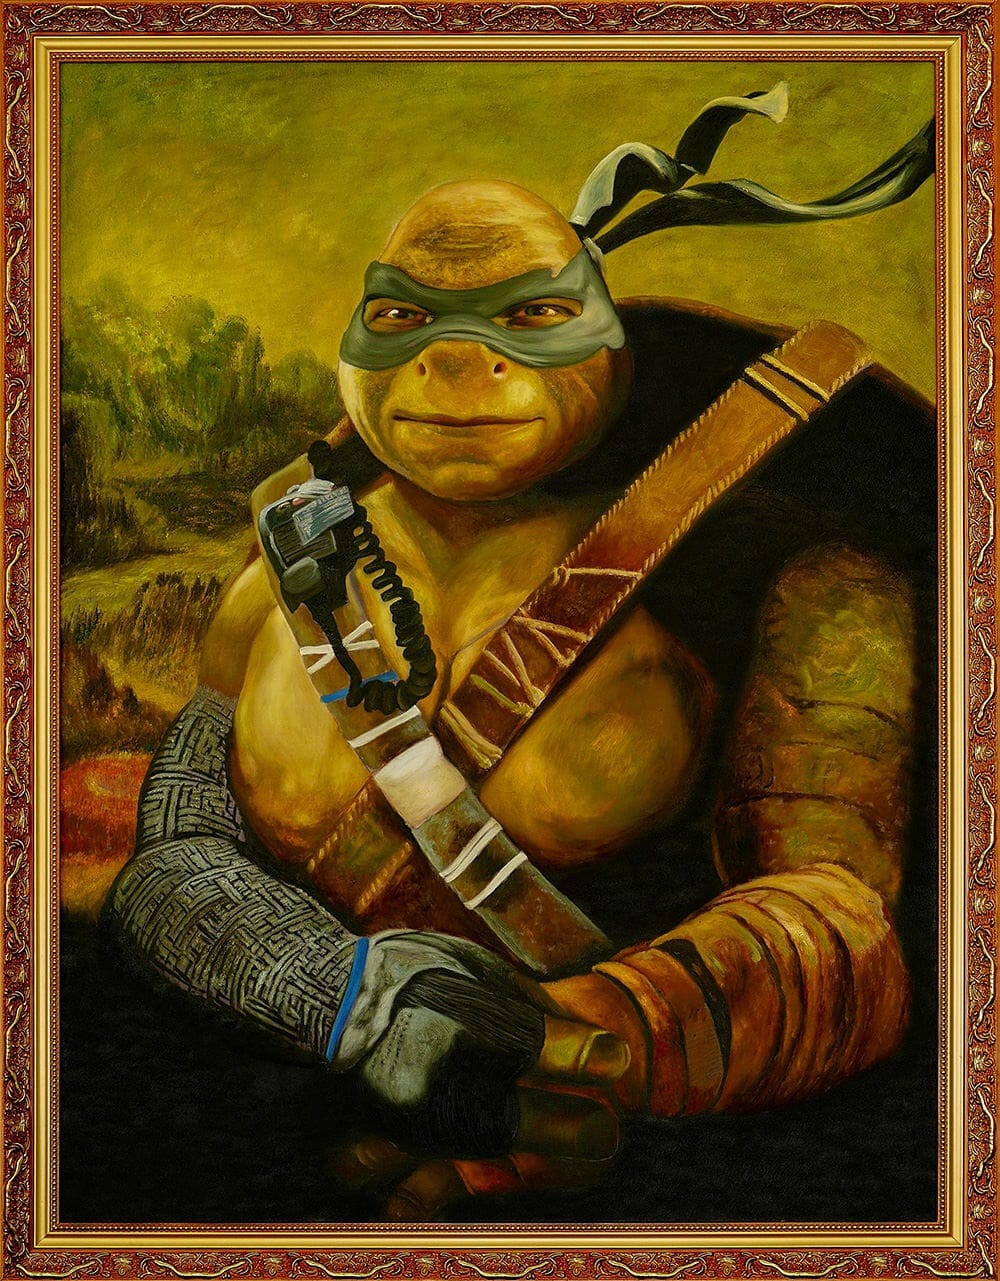 Tartarugas Ninja Leonardo / Michelangelo / Donatello